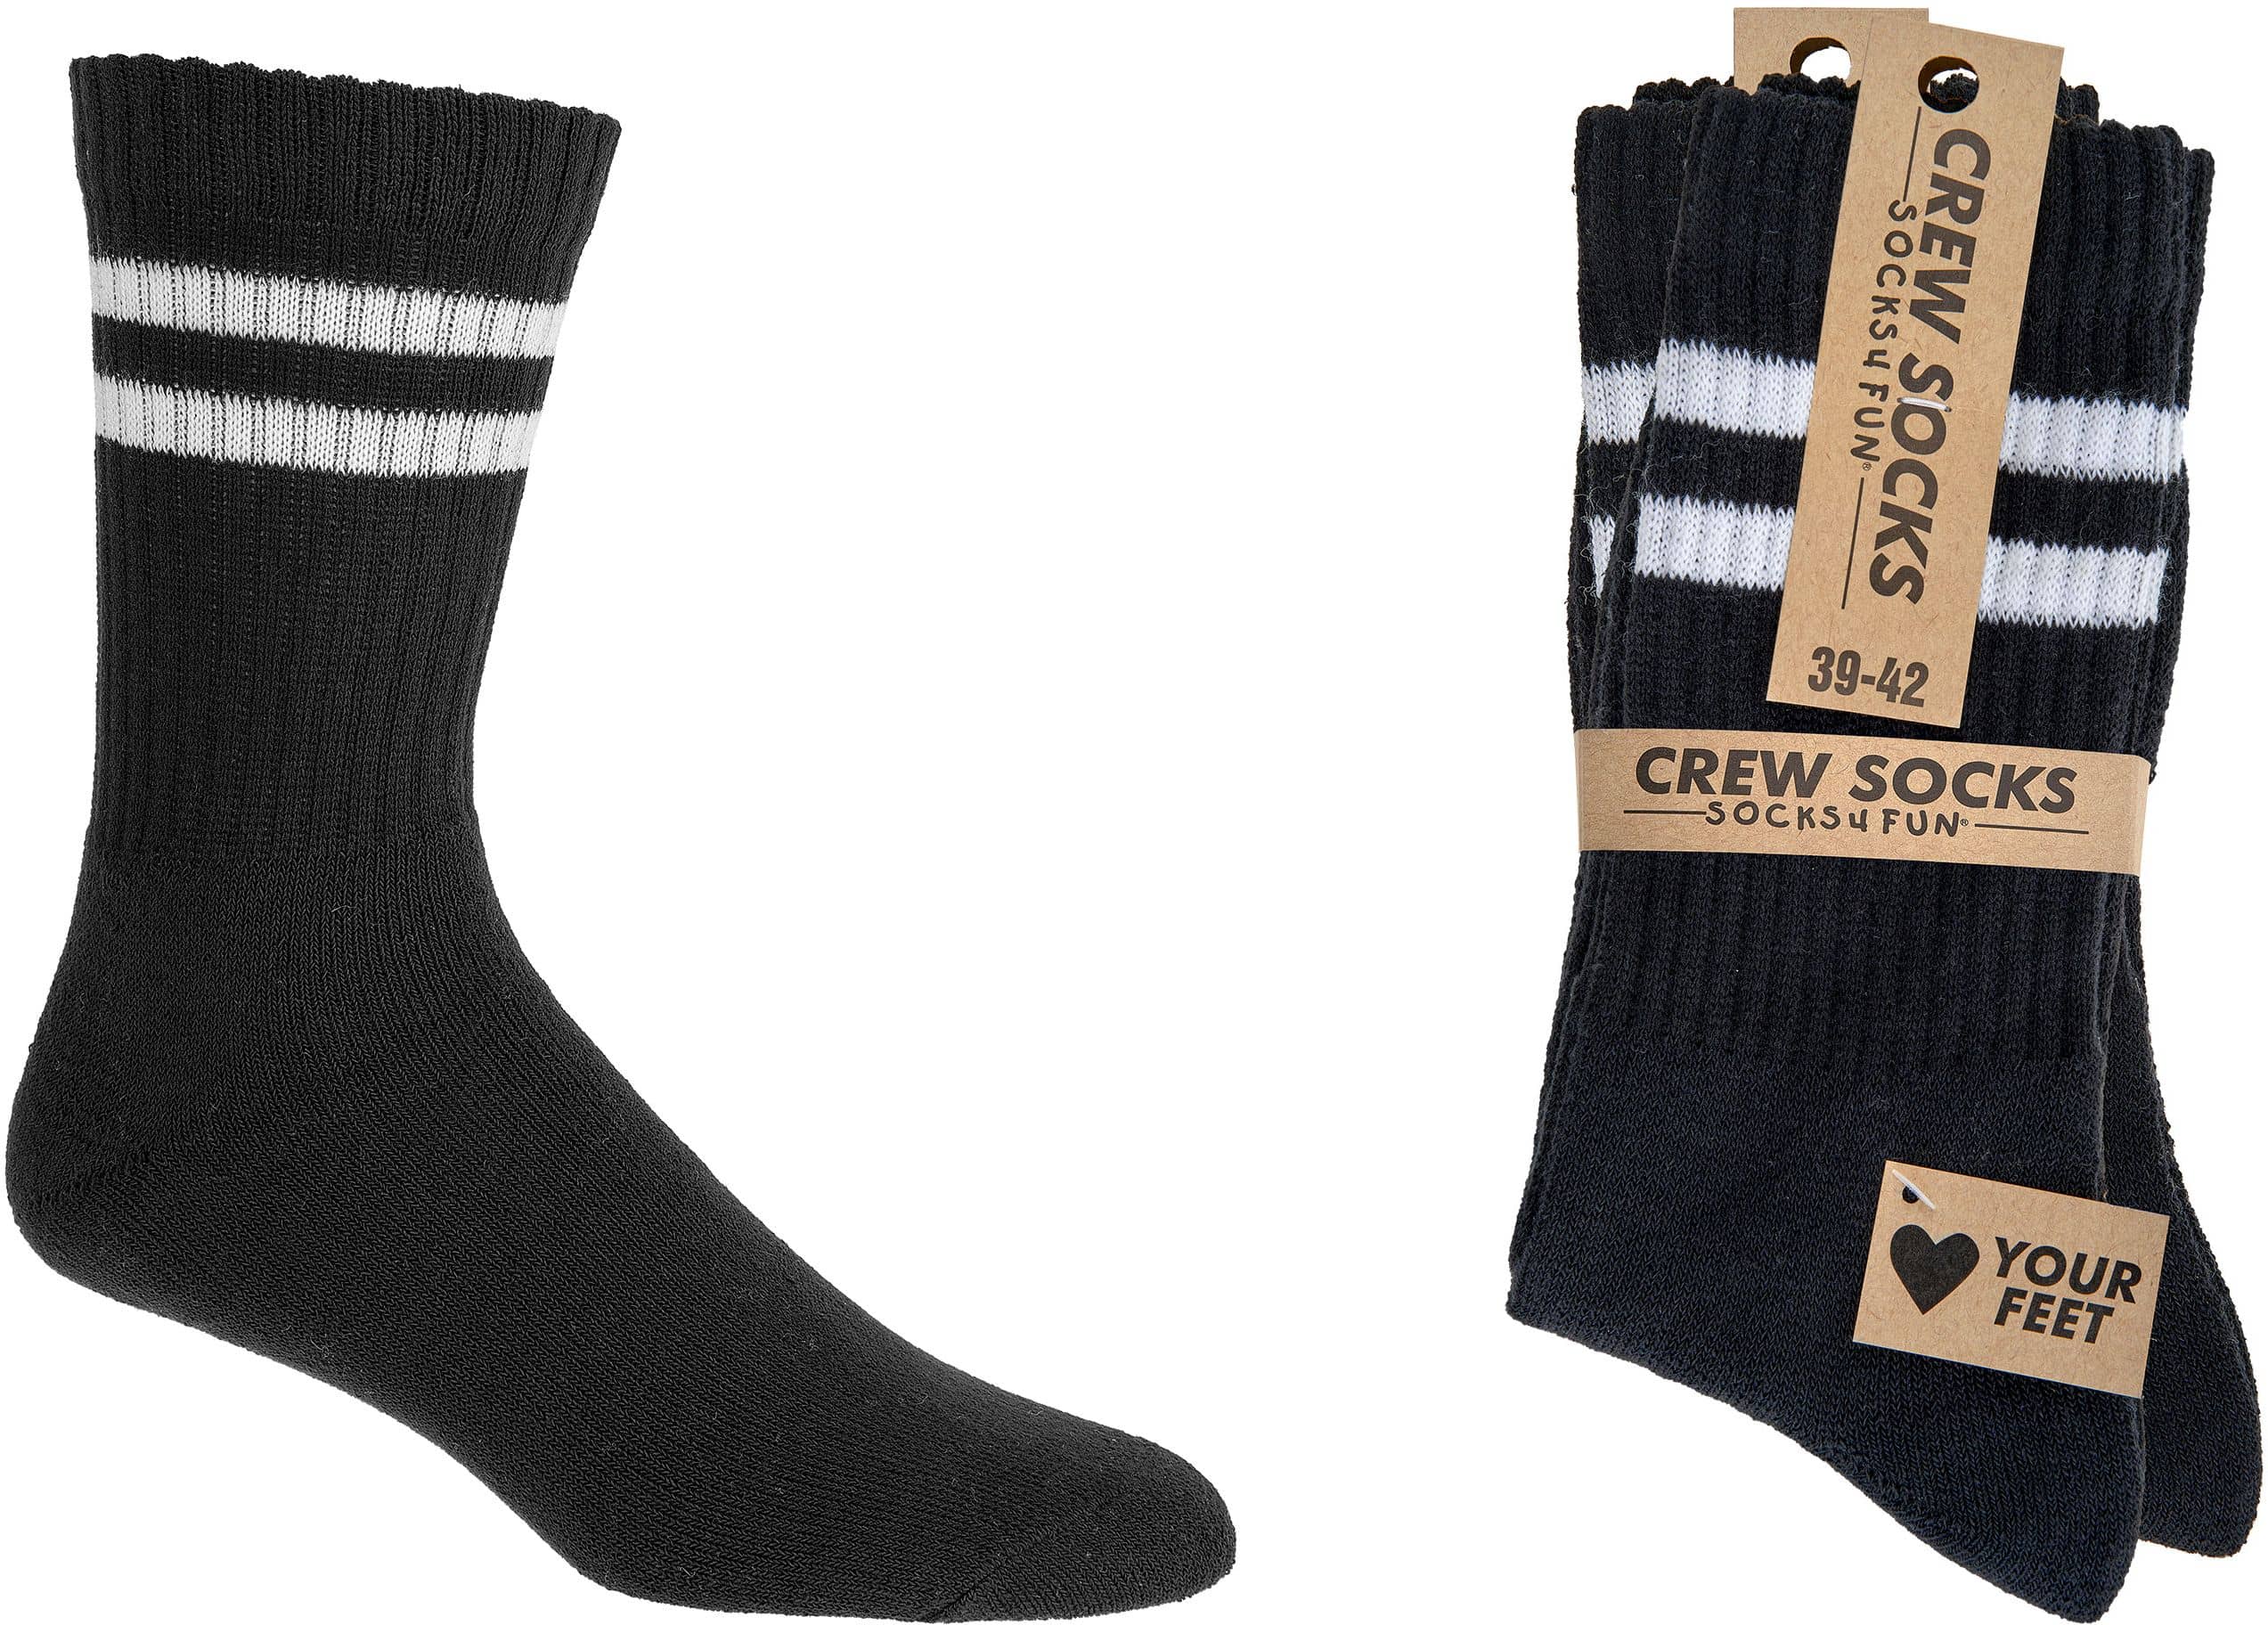 SPORT-OUTDOOR „CREW Socks“ für Teenager-Damen & Herren    3,6 oder 9 Paar